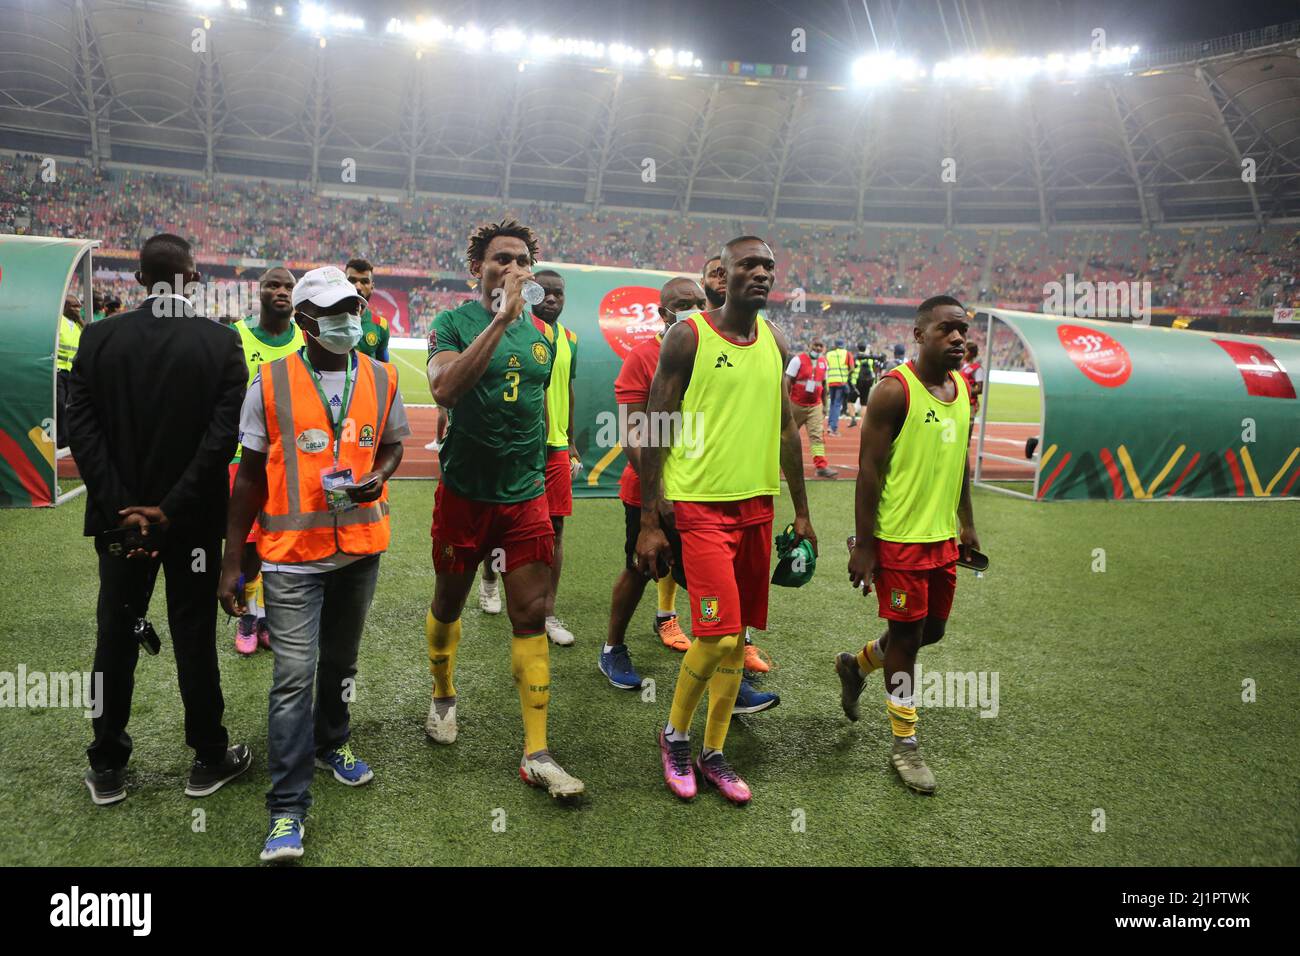 L'Algérie a battu le Cameroun 1-0 lors du tour de qualification de la coupe du monde de la FIFA 2022 au Qatar, le but a été marqué par Islam Slimani, au stade Jaboma, à Douala, au Cameroun, le 25 mars, 2022. Photo de Hamza Bouhara/ABACAPRESS.COM Banque D'Images